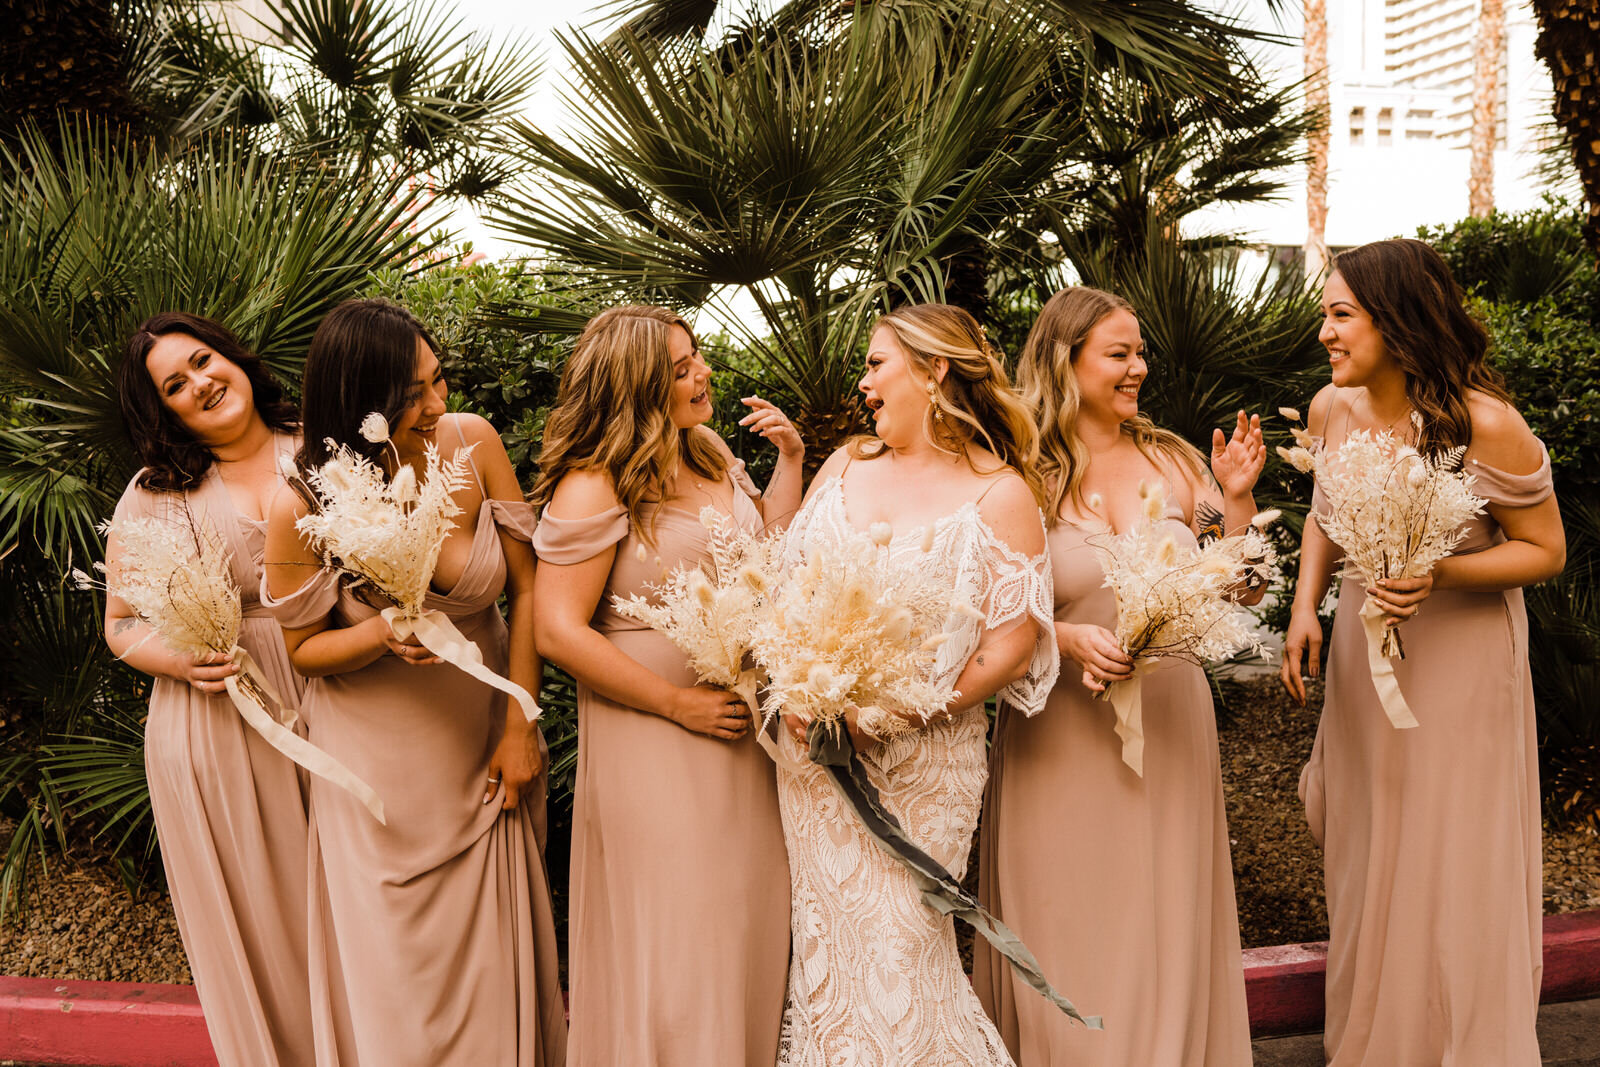 Bride and bridesmaids laugh at destination wedding in Las Vegas, Nevada